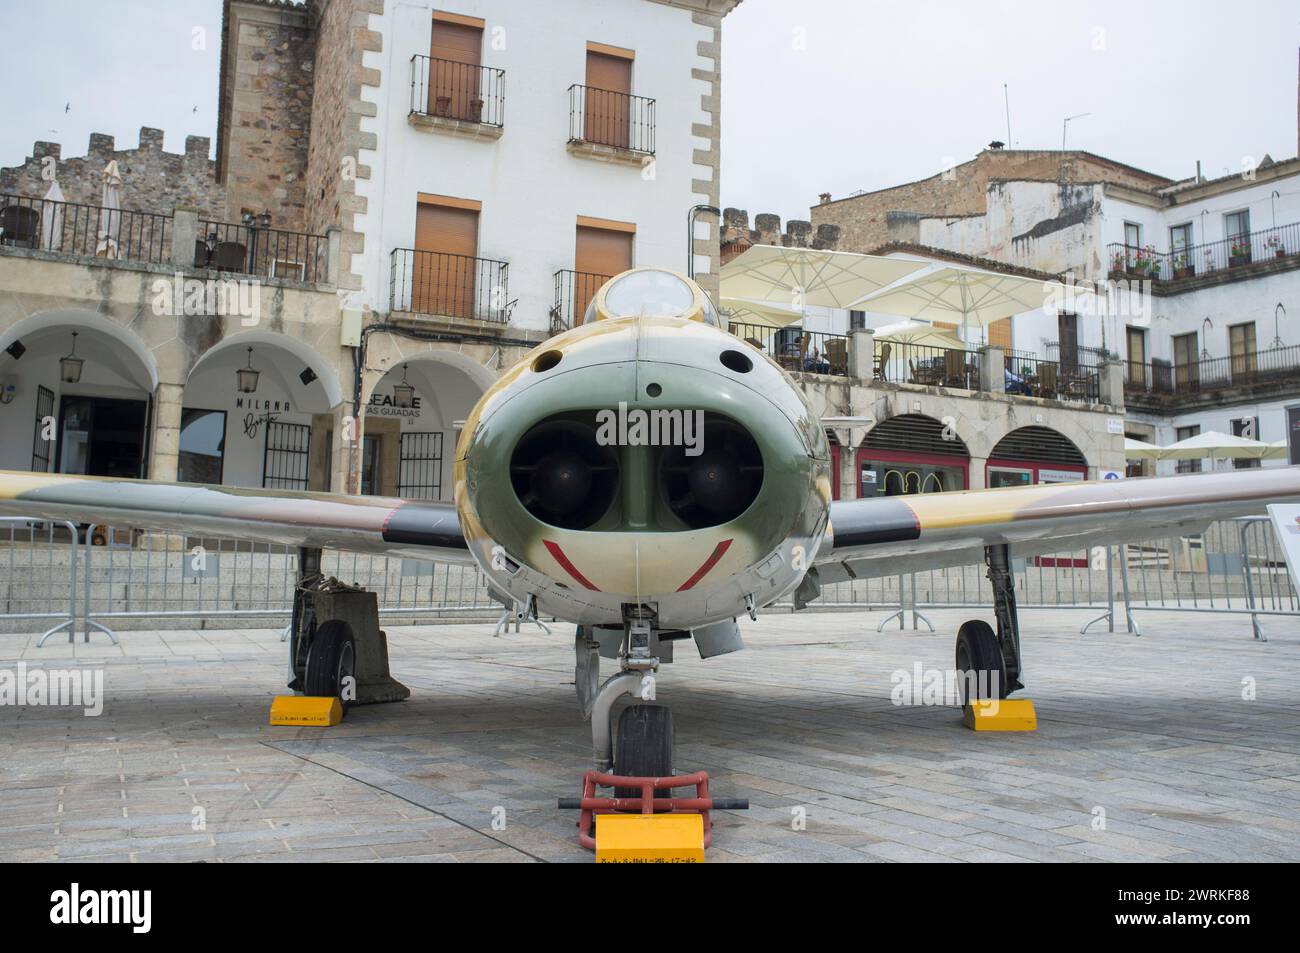 Caceres, Spain - May 27th, 2021: Hispano HA-200 Saeta. Spanish military aviation exhibition, Caceres Main Square, Spain Stock Photo